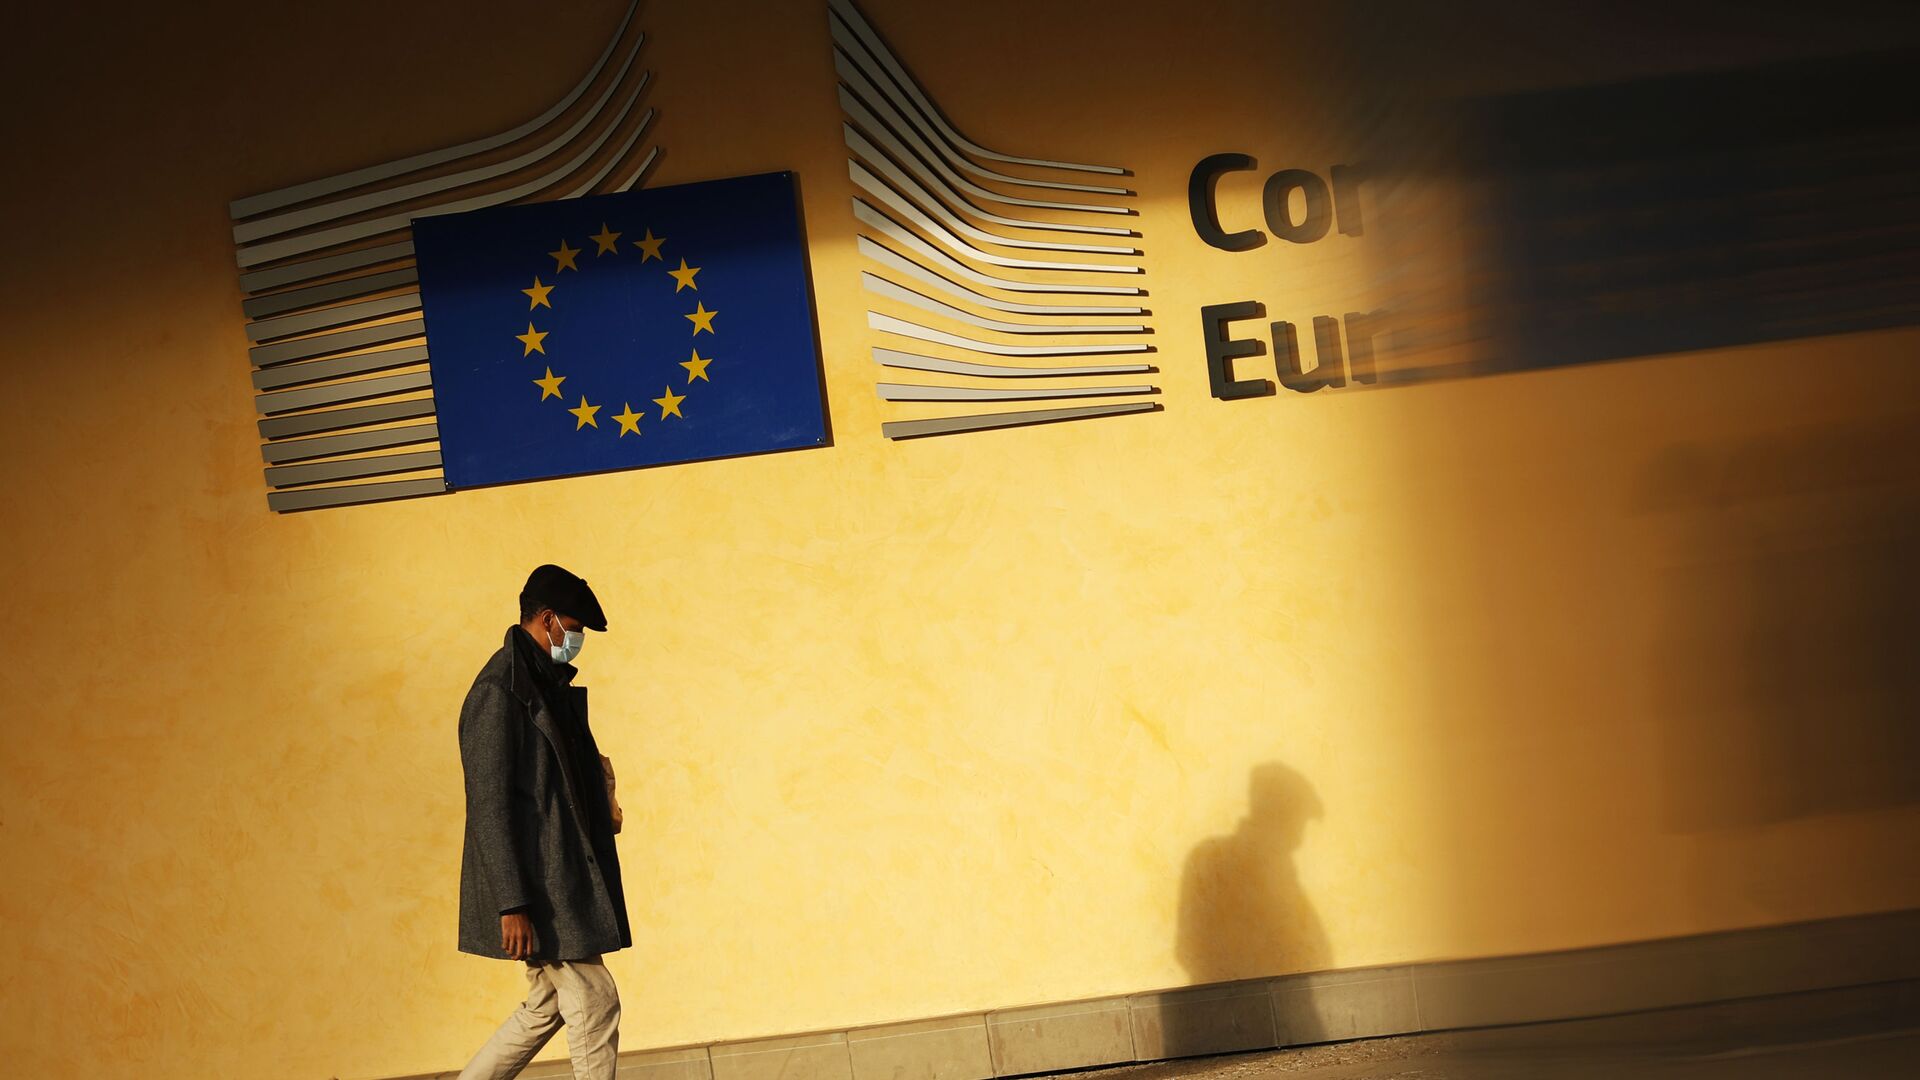 Тень человека падает на фасад штаб-квартиры ЕС в Брюсселе - Sputnik Молдова, 1920, 17.10.2021